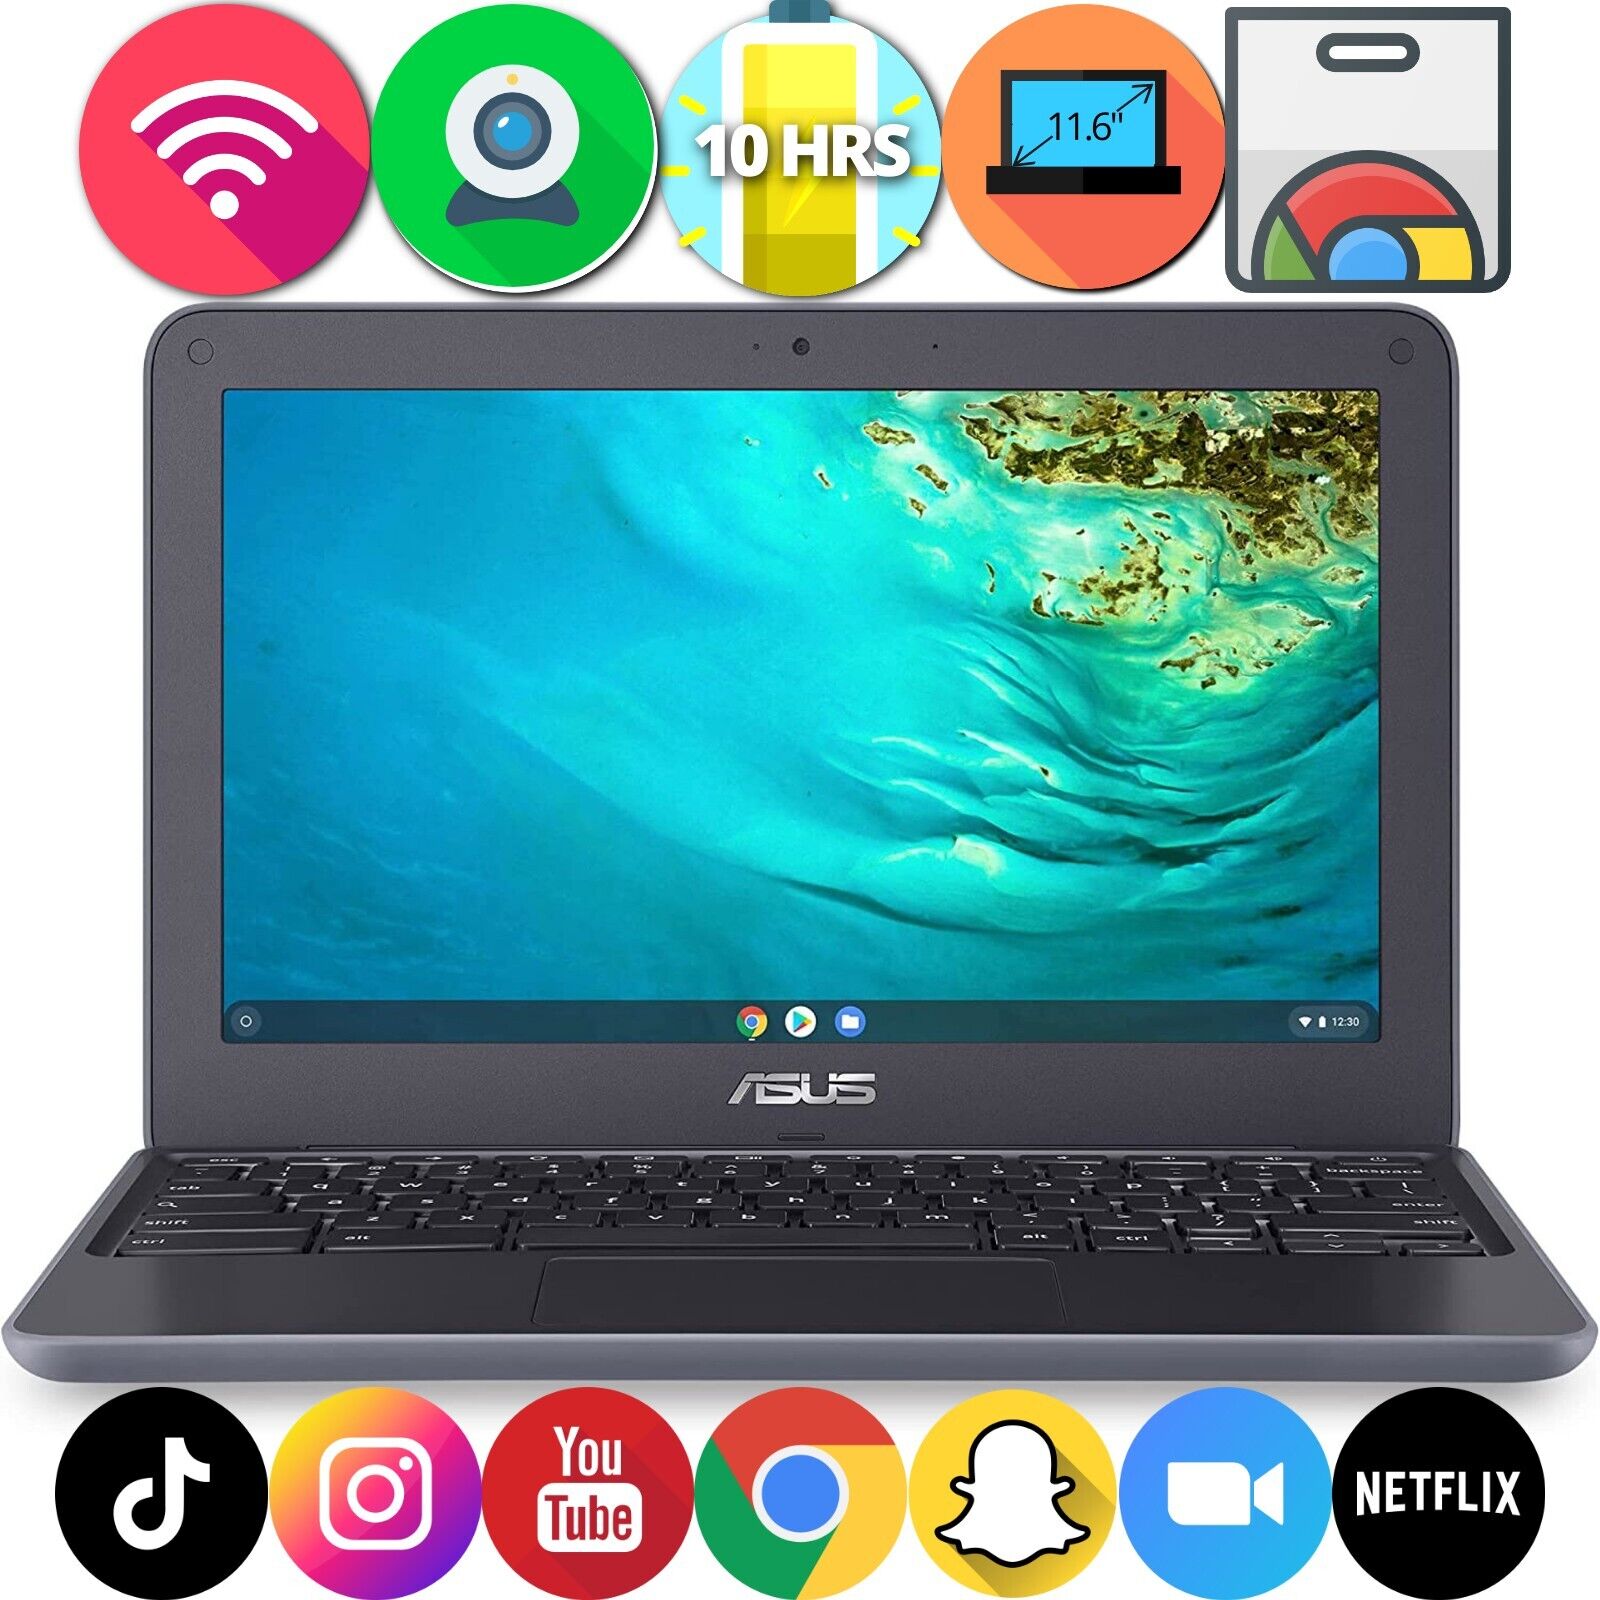 Asus Chromebook C202 11.6” Intel 1.6 GHz 4GB RAM 16GB eMMC Bluetooth HDMI Webcam